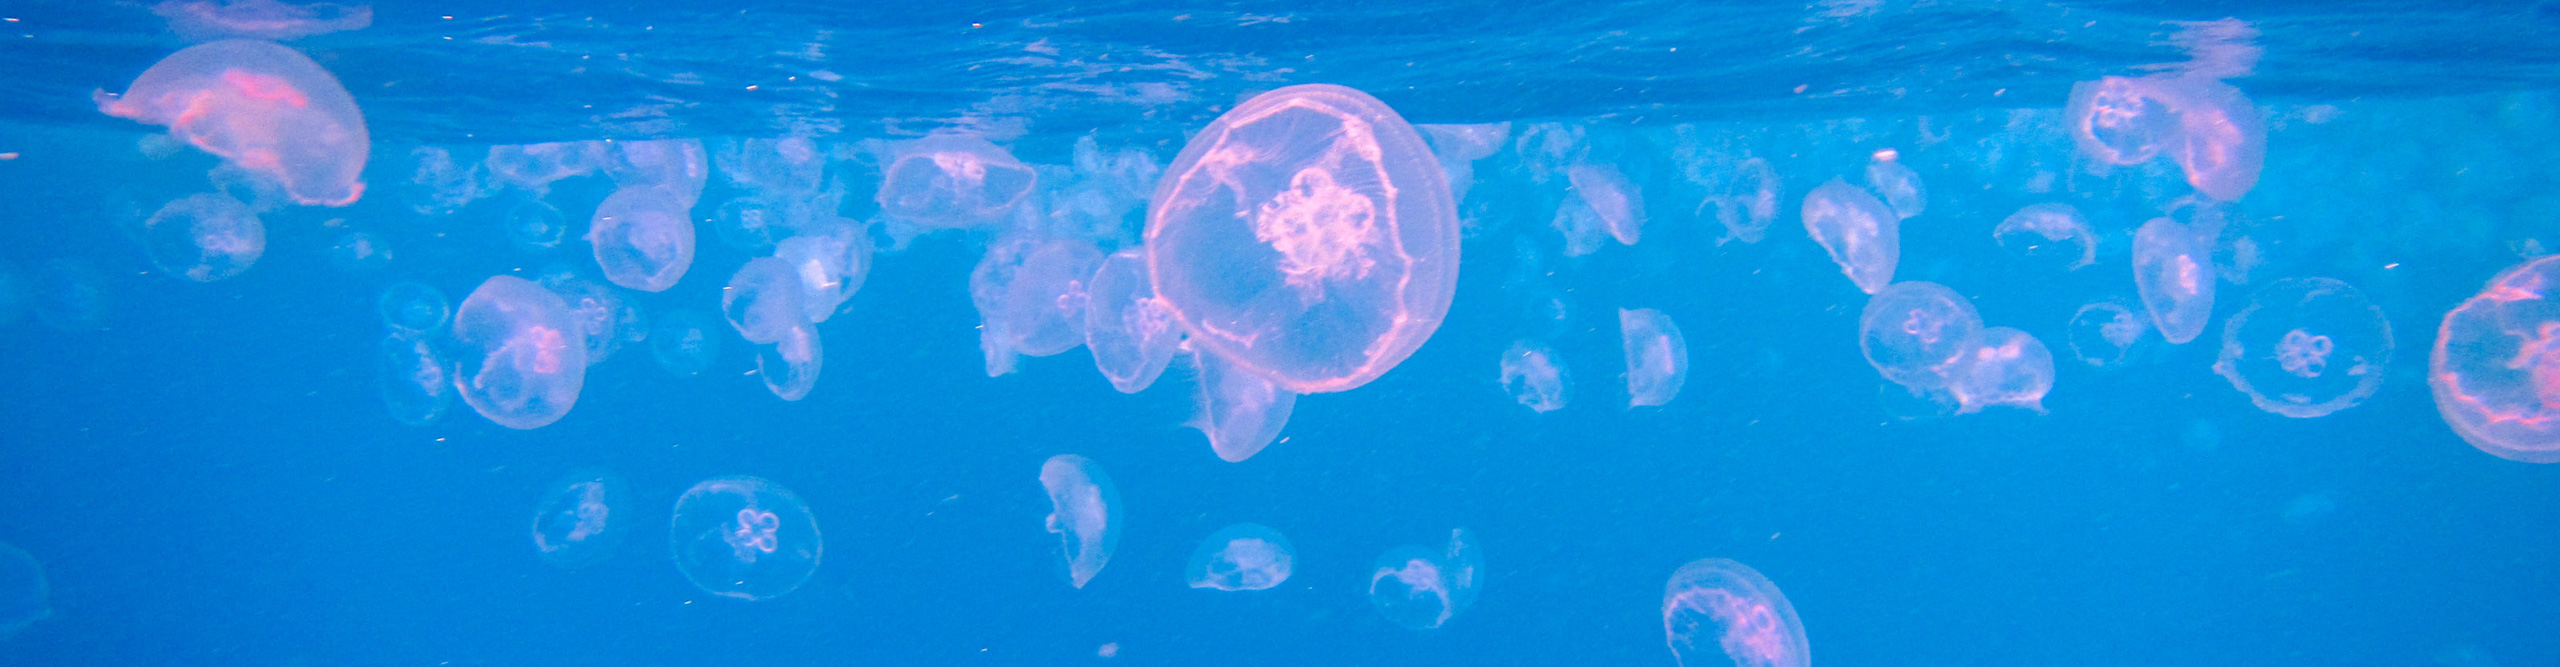 Jellyfish glowing pink underwater 